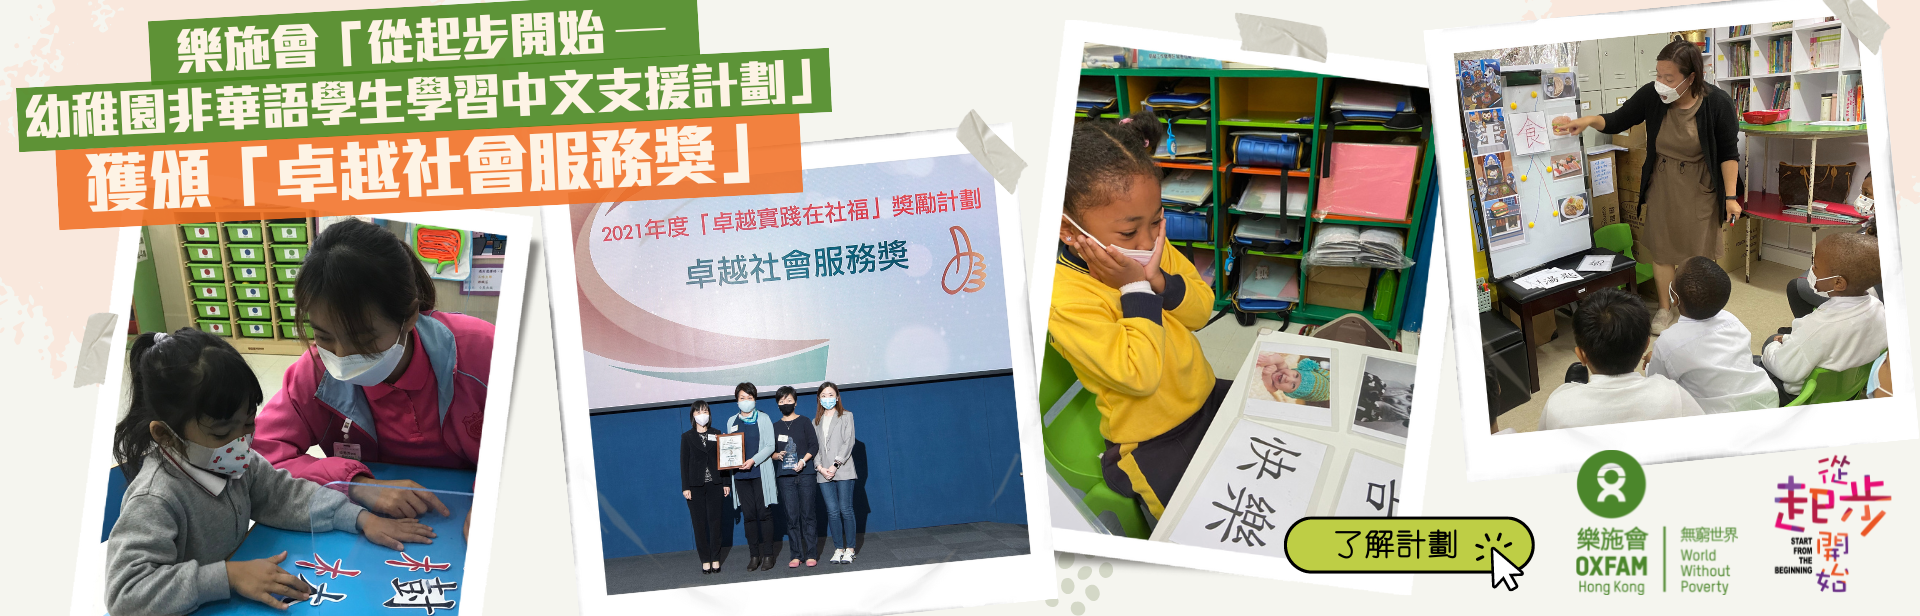 樂施會「從起步開始 — 幼稚園非華語學生學習中文支援計劃」 獲頒「卓越社會服務獎」